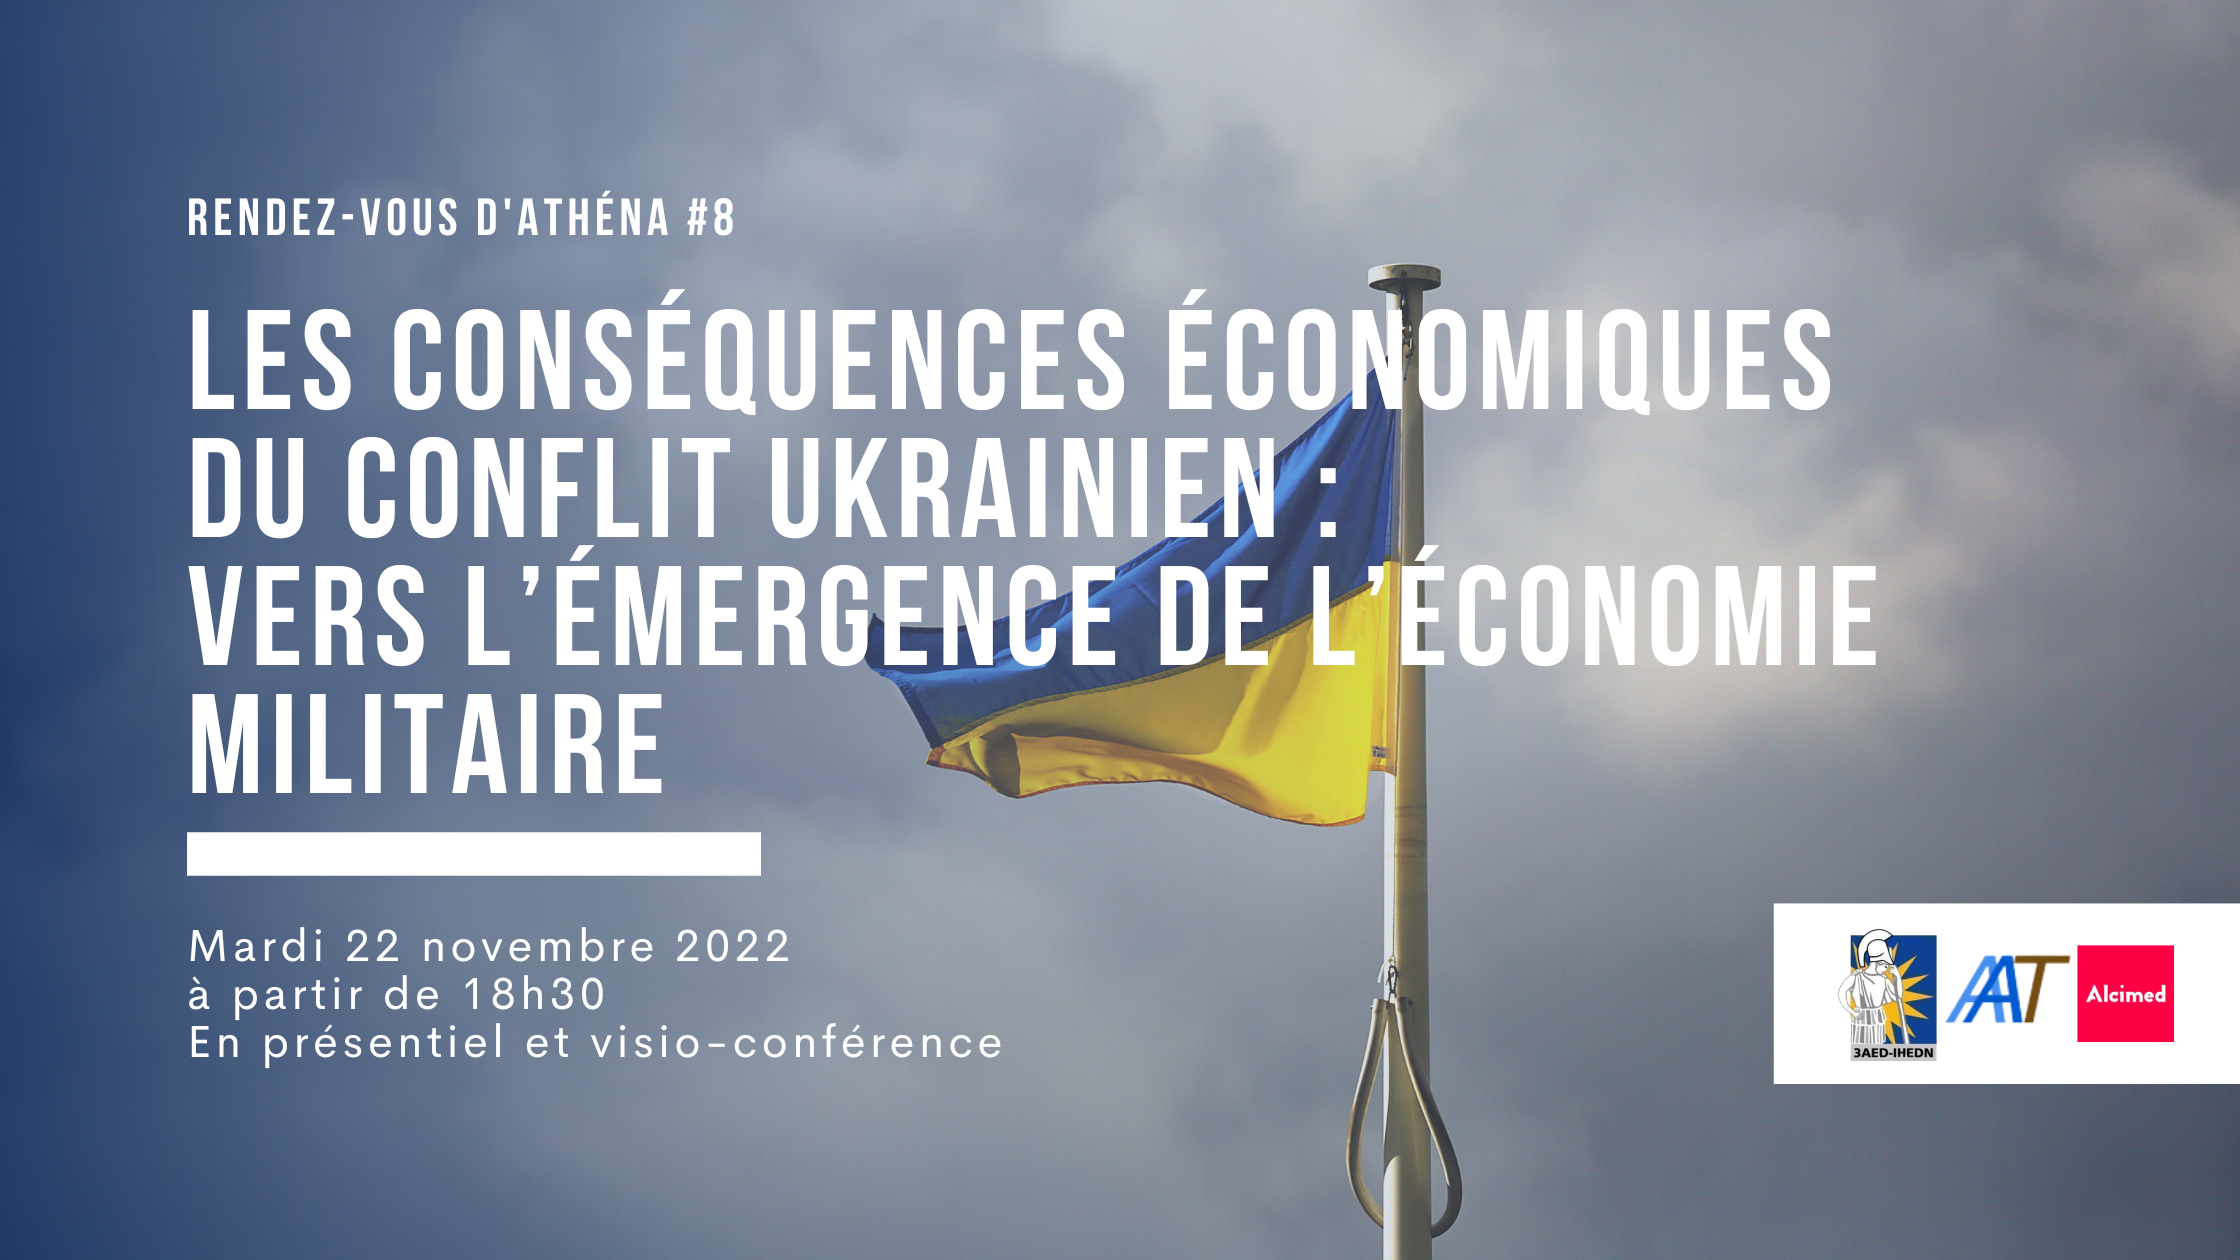 Rendez-vous d’Athéna #8 | Les conséquences économiques du conflit Ukrainien : vers l’émergence de l’économie militaire